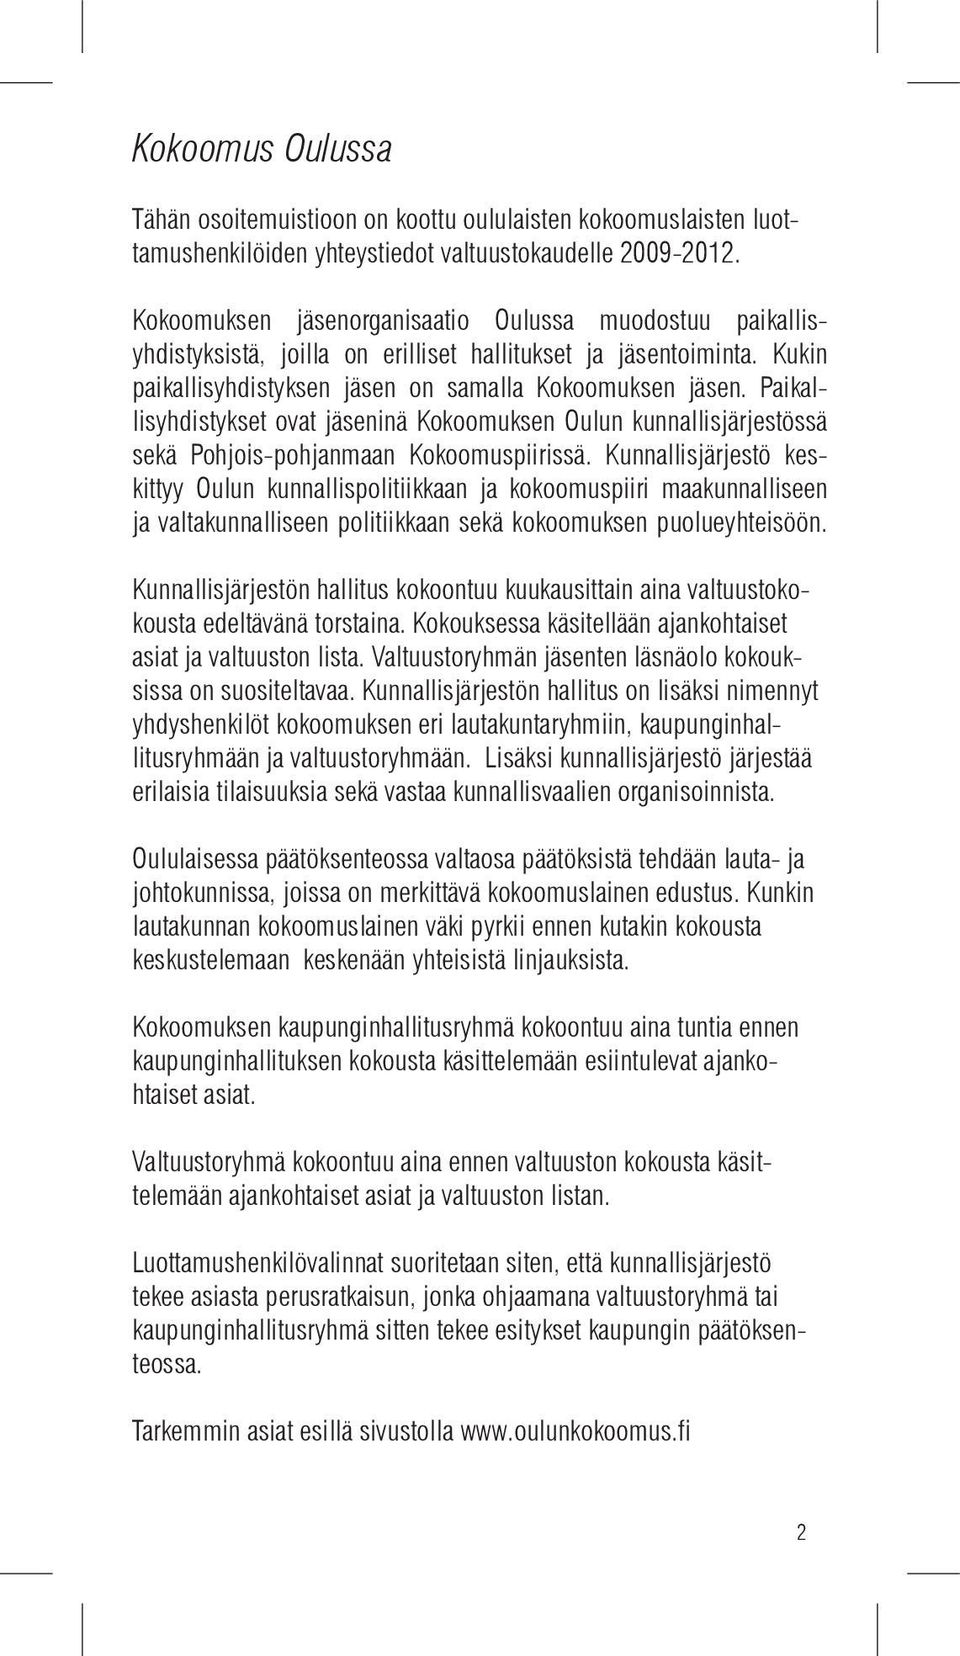 Paikallisyhdistykset ovat jäseninä Kokoomuksen Oulun kunnallisjärjestössä sekä Pohjois-pohjanmaan Kokoomuspiirissä.